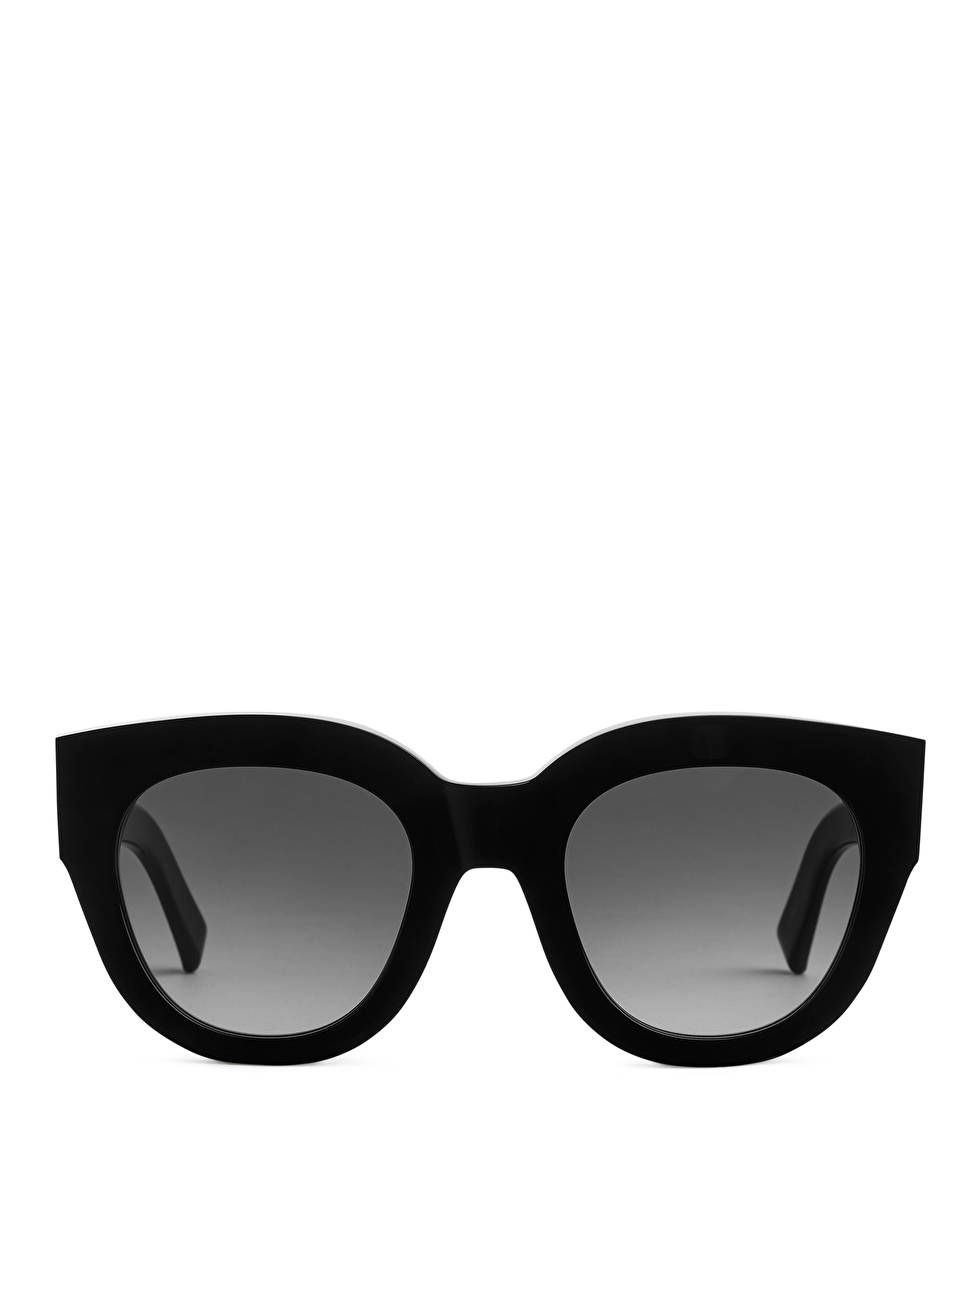 Sonnenbrille Cleo von Monokel Eyewear | ARKET (EU)